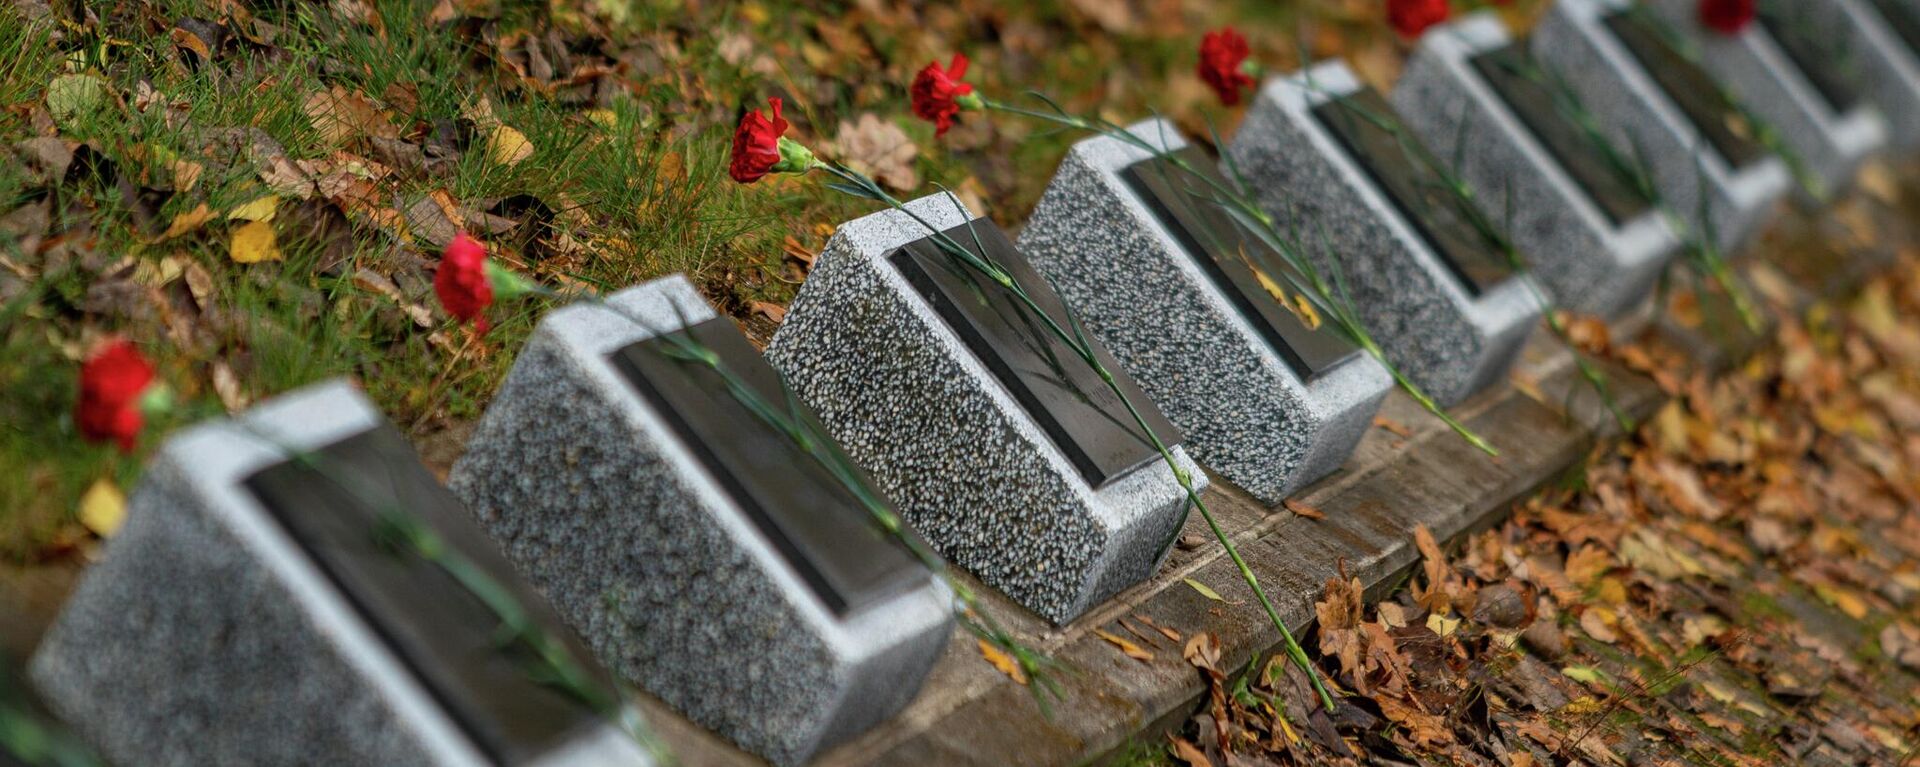 Церемония возложения цветов на Гарнизонном кладбище по случаю 78-й годовщины освобождения Риги от немецко-фашистских захватчиков, 13 октября 2022 года  - Sputnik Латвия, 1920, 01.11.2022